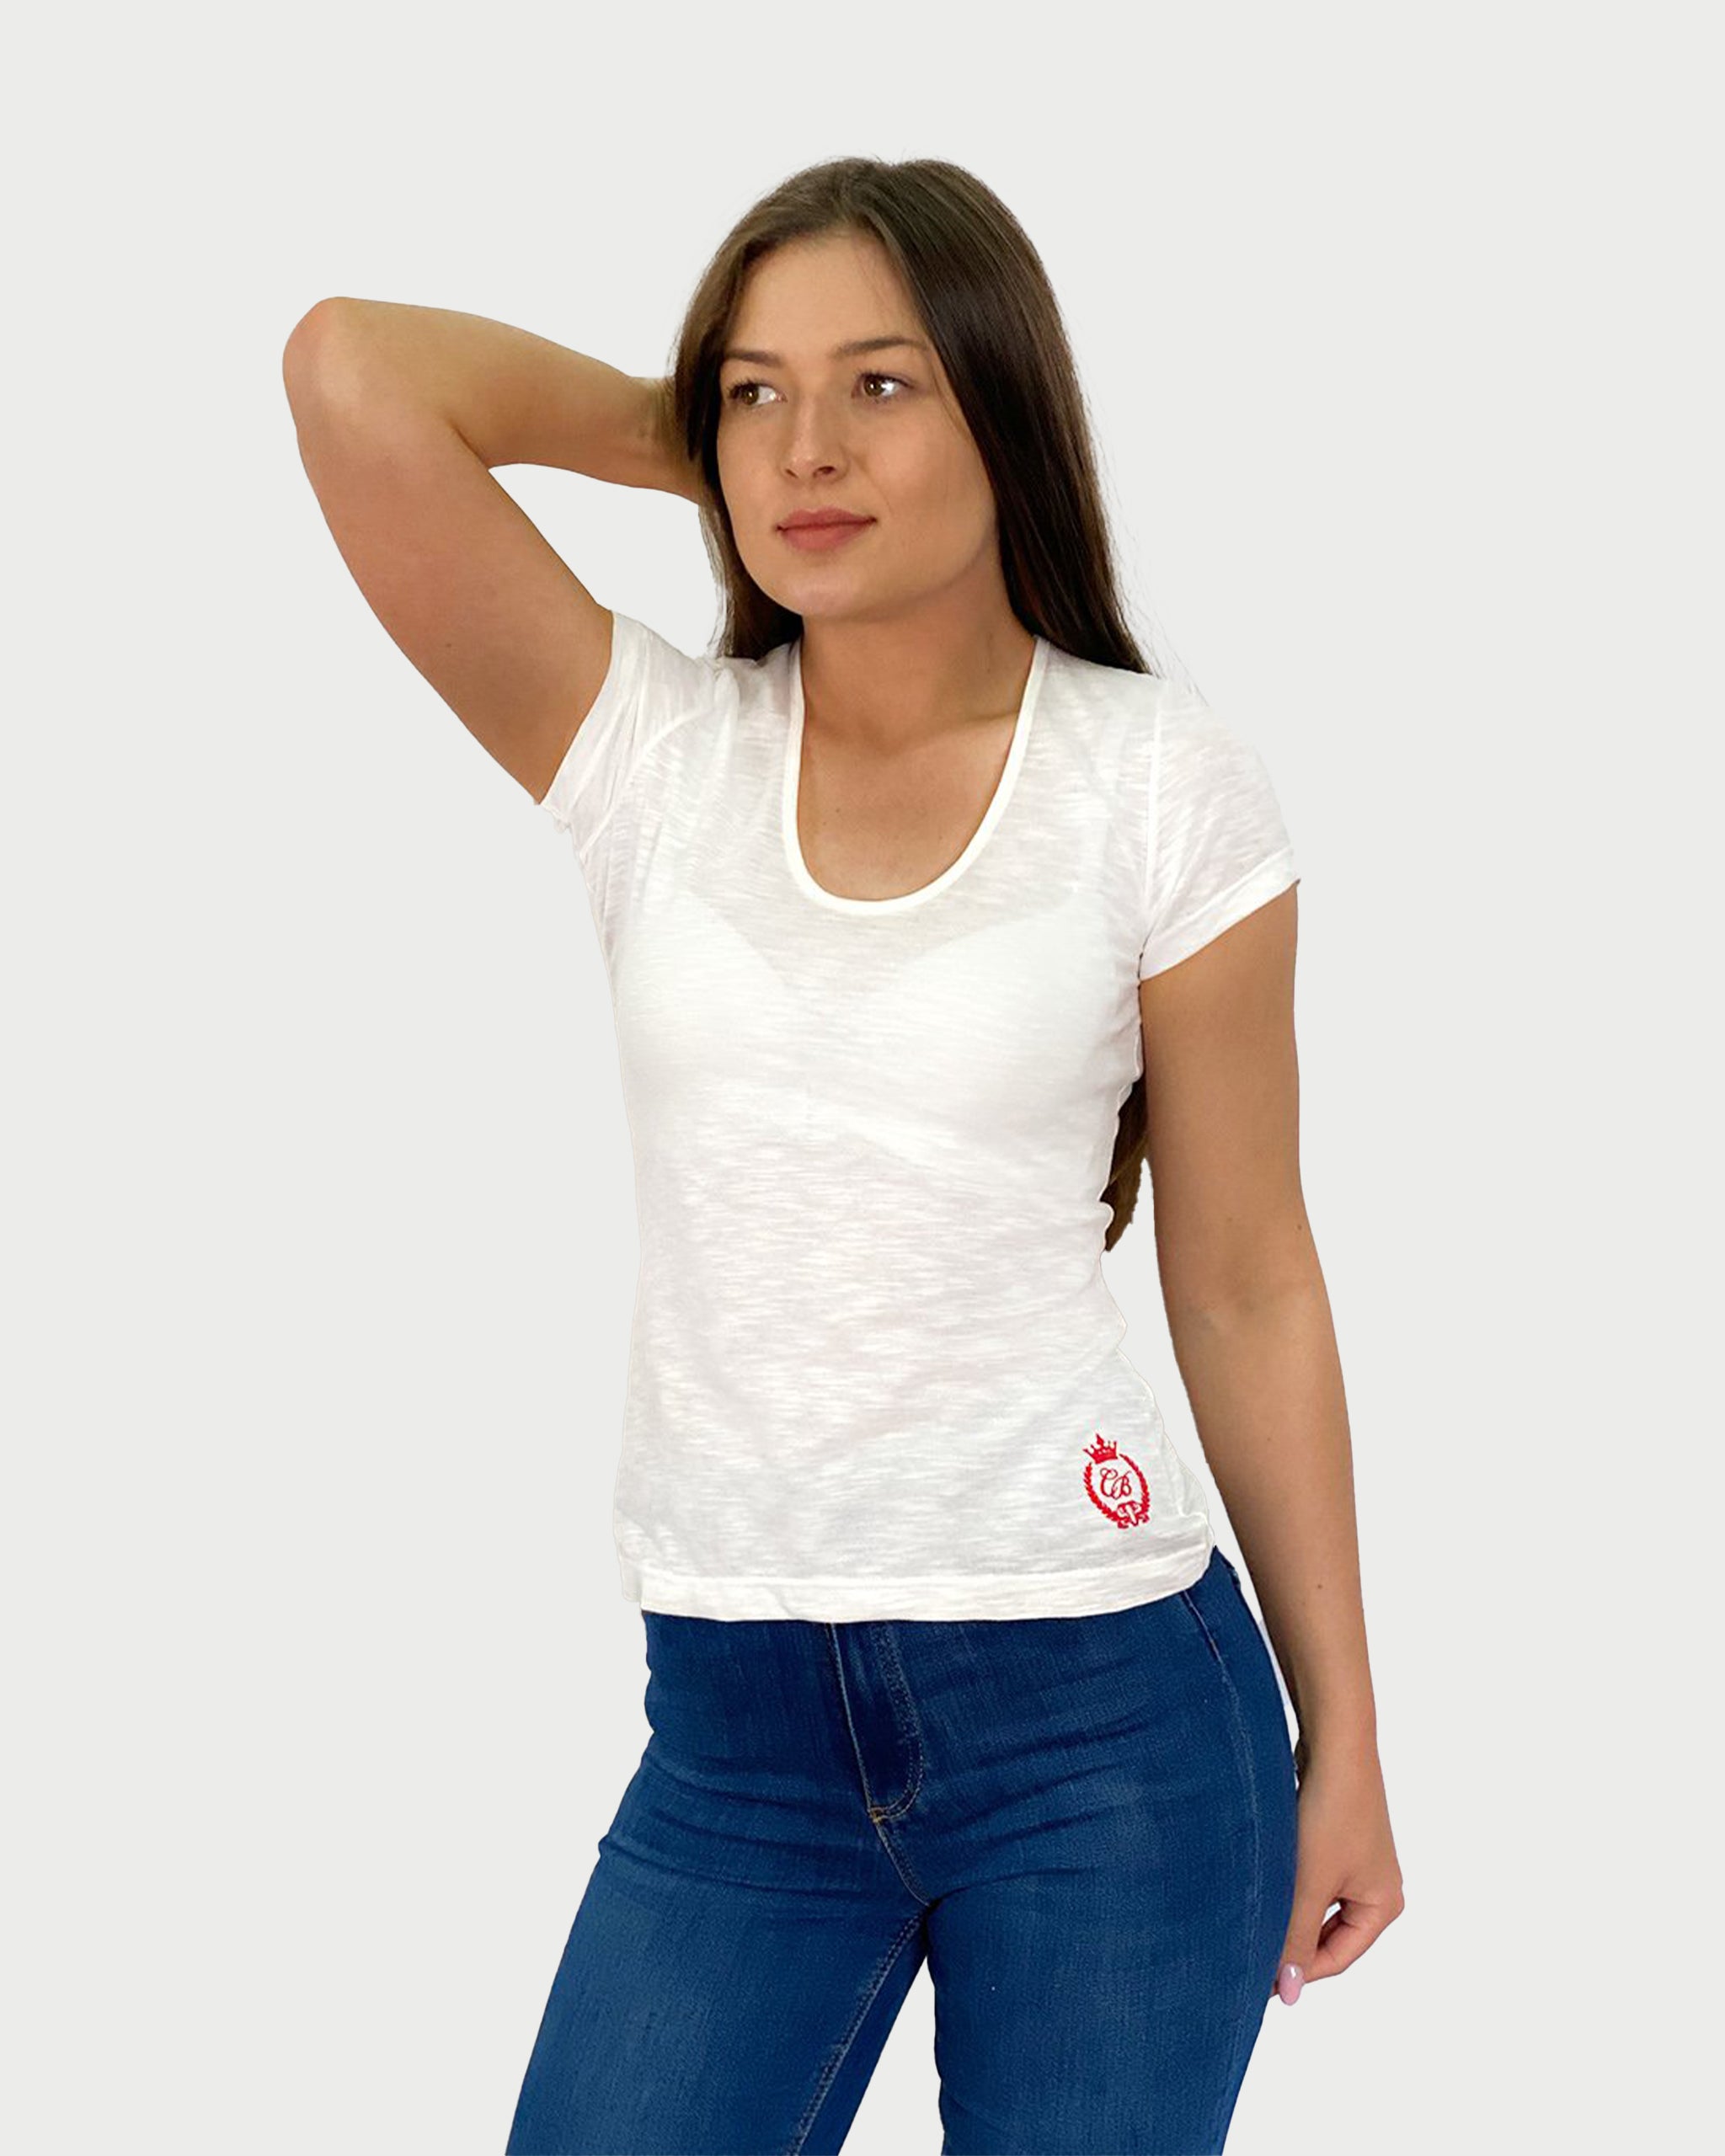 LIGHT SENSATION - tricou minimalist pentru femei